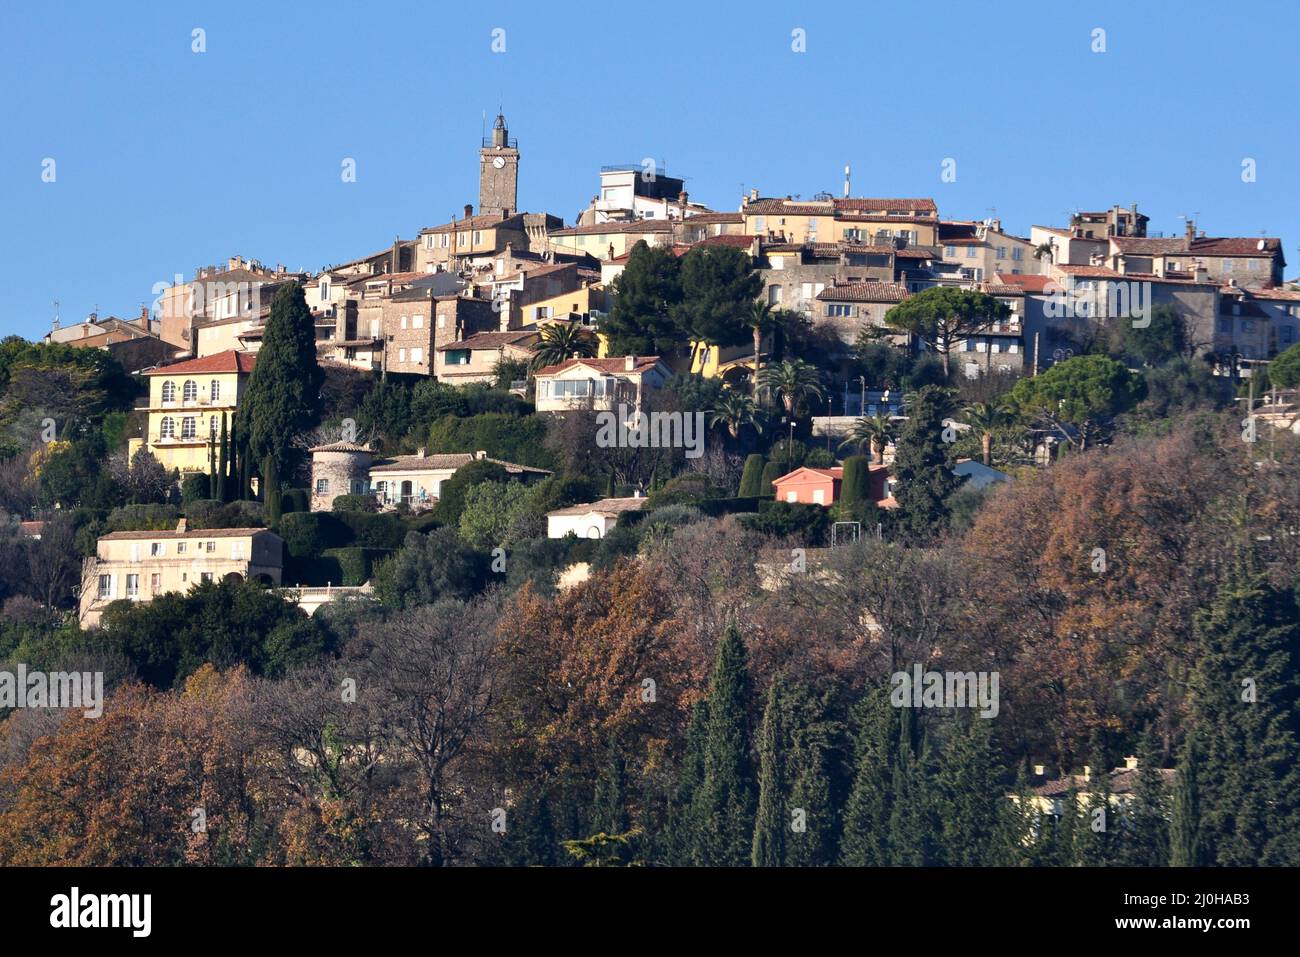 France, côte d'azur, Mougins, ce magnifique village médiéval se situe entre pins et oliviers, Pablo Picasso y quitte 15 ans. Banque D'Images